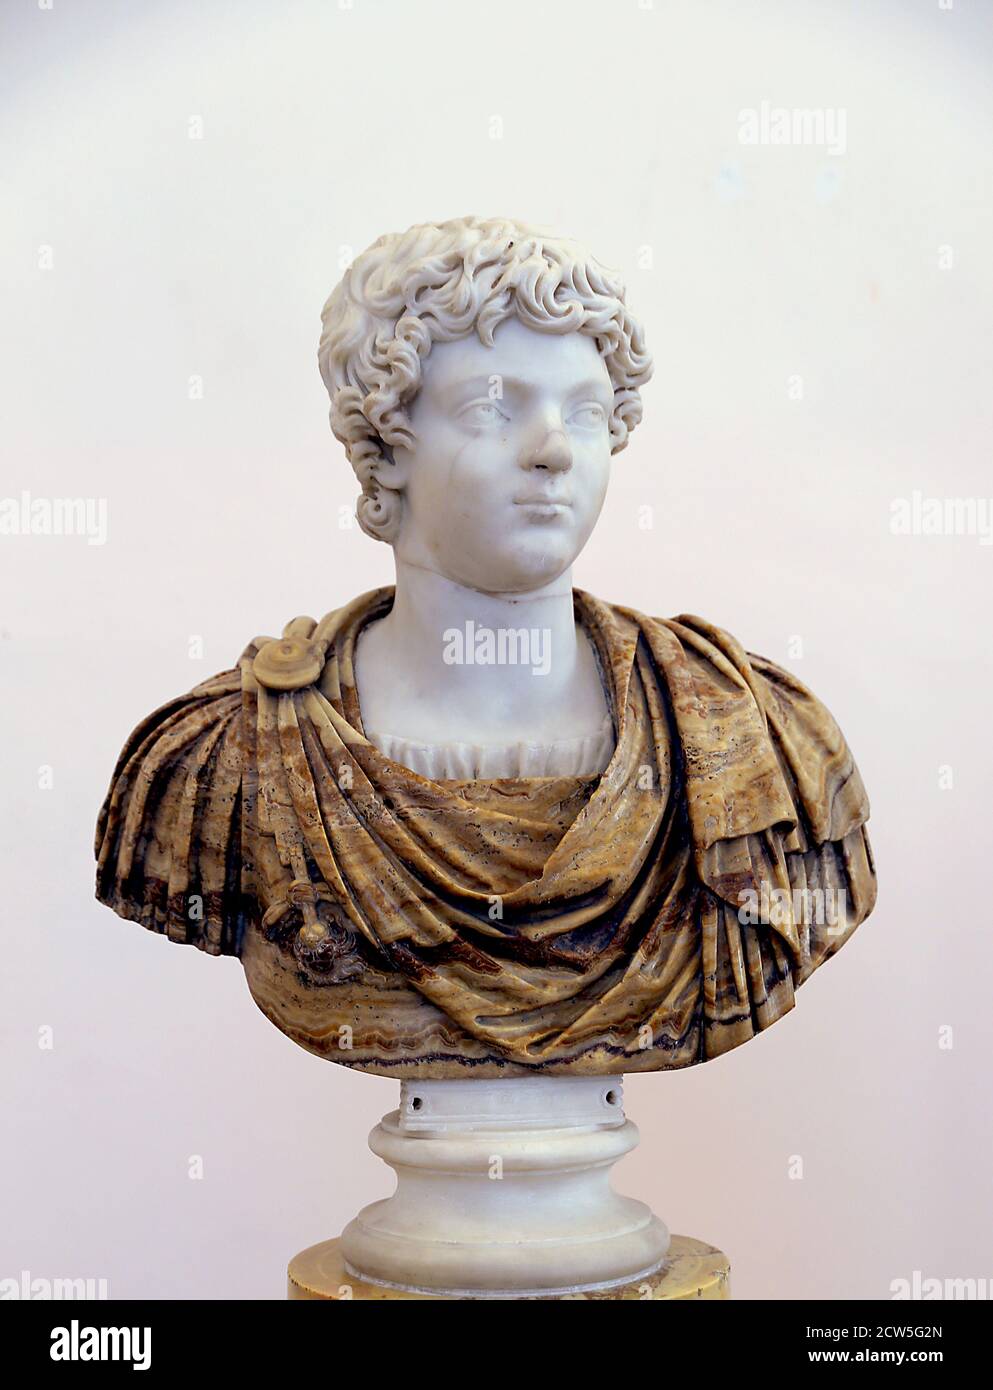 Caracalla (188-217 DC) como joven. Emperador Romano y co-emperador. Cabeza de mármol en busto de alabastro (196-204). Nápoles Arqueológico. Italia. Foto de stock